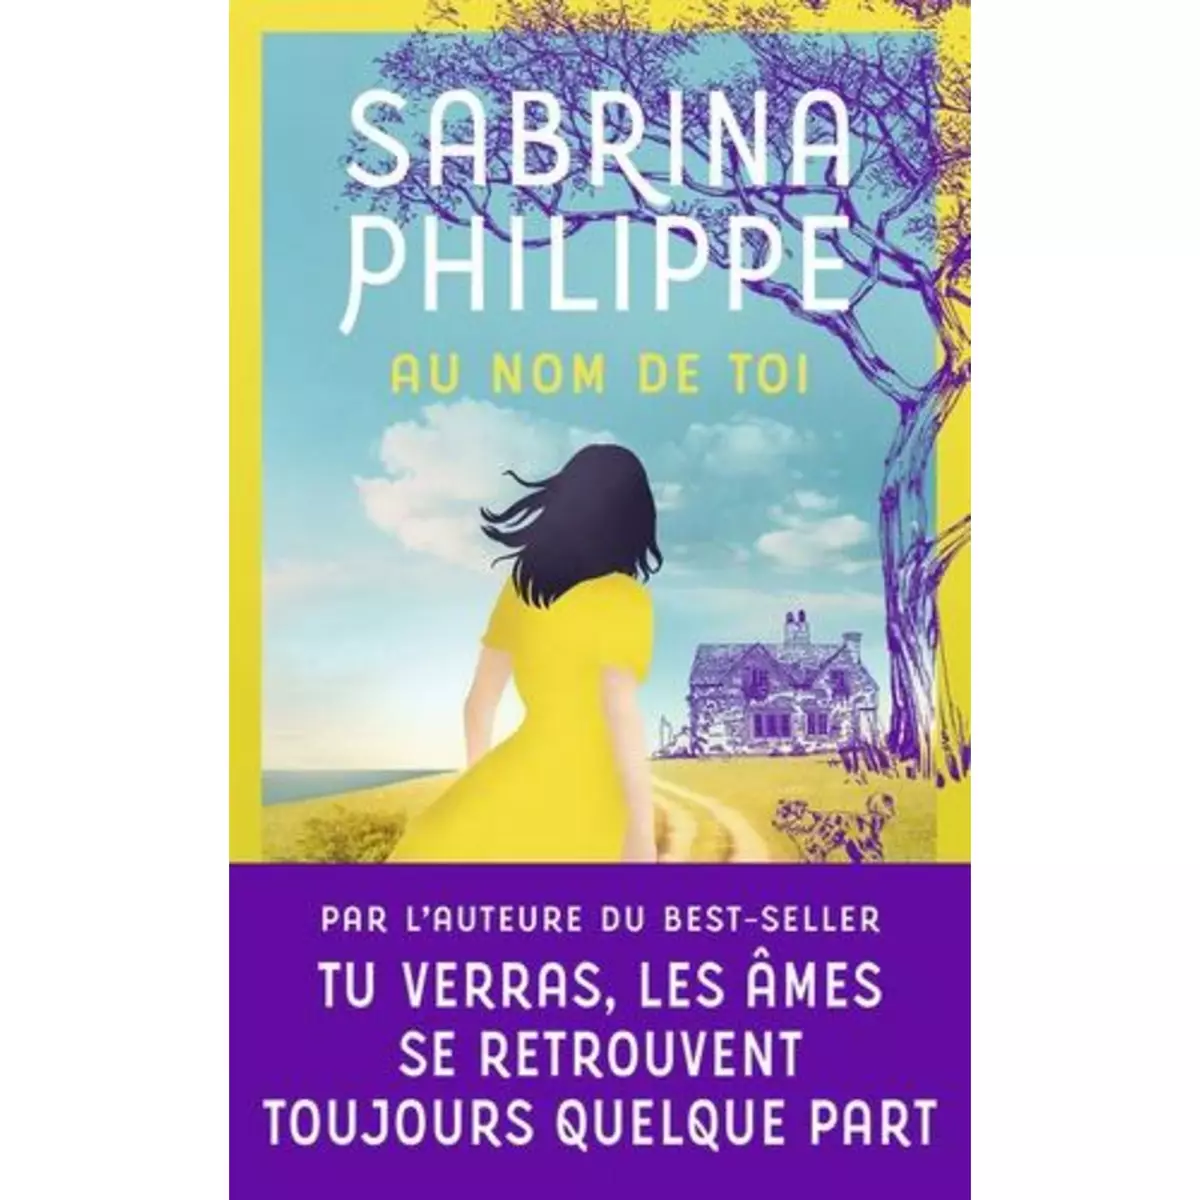  AU NOM DE TOI, Philippe Sabrina